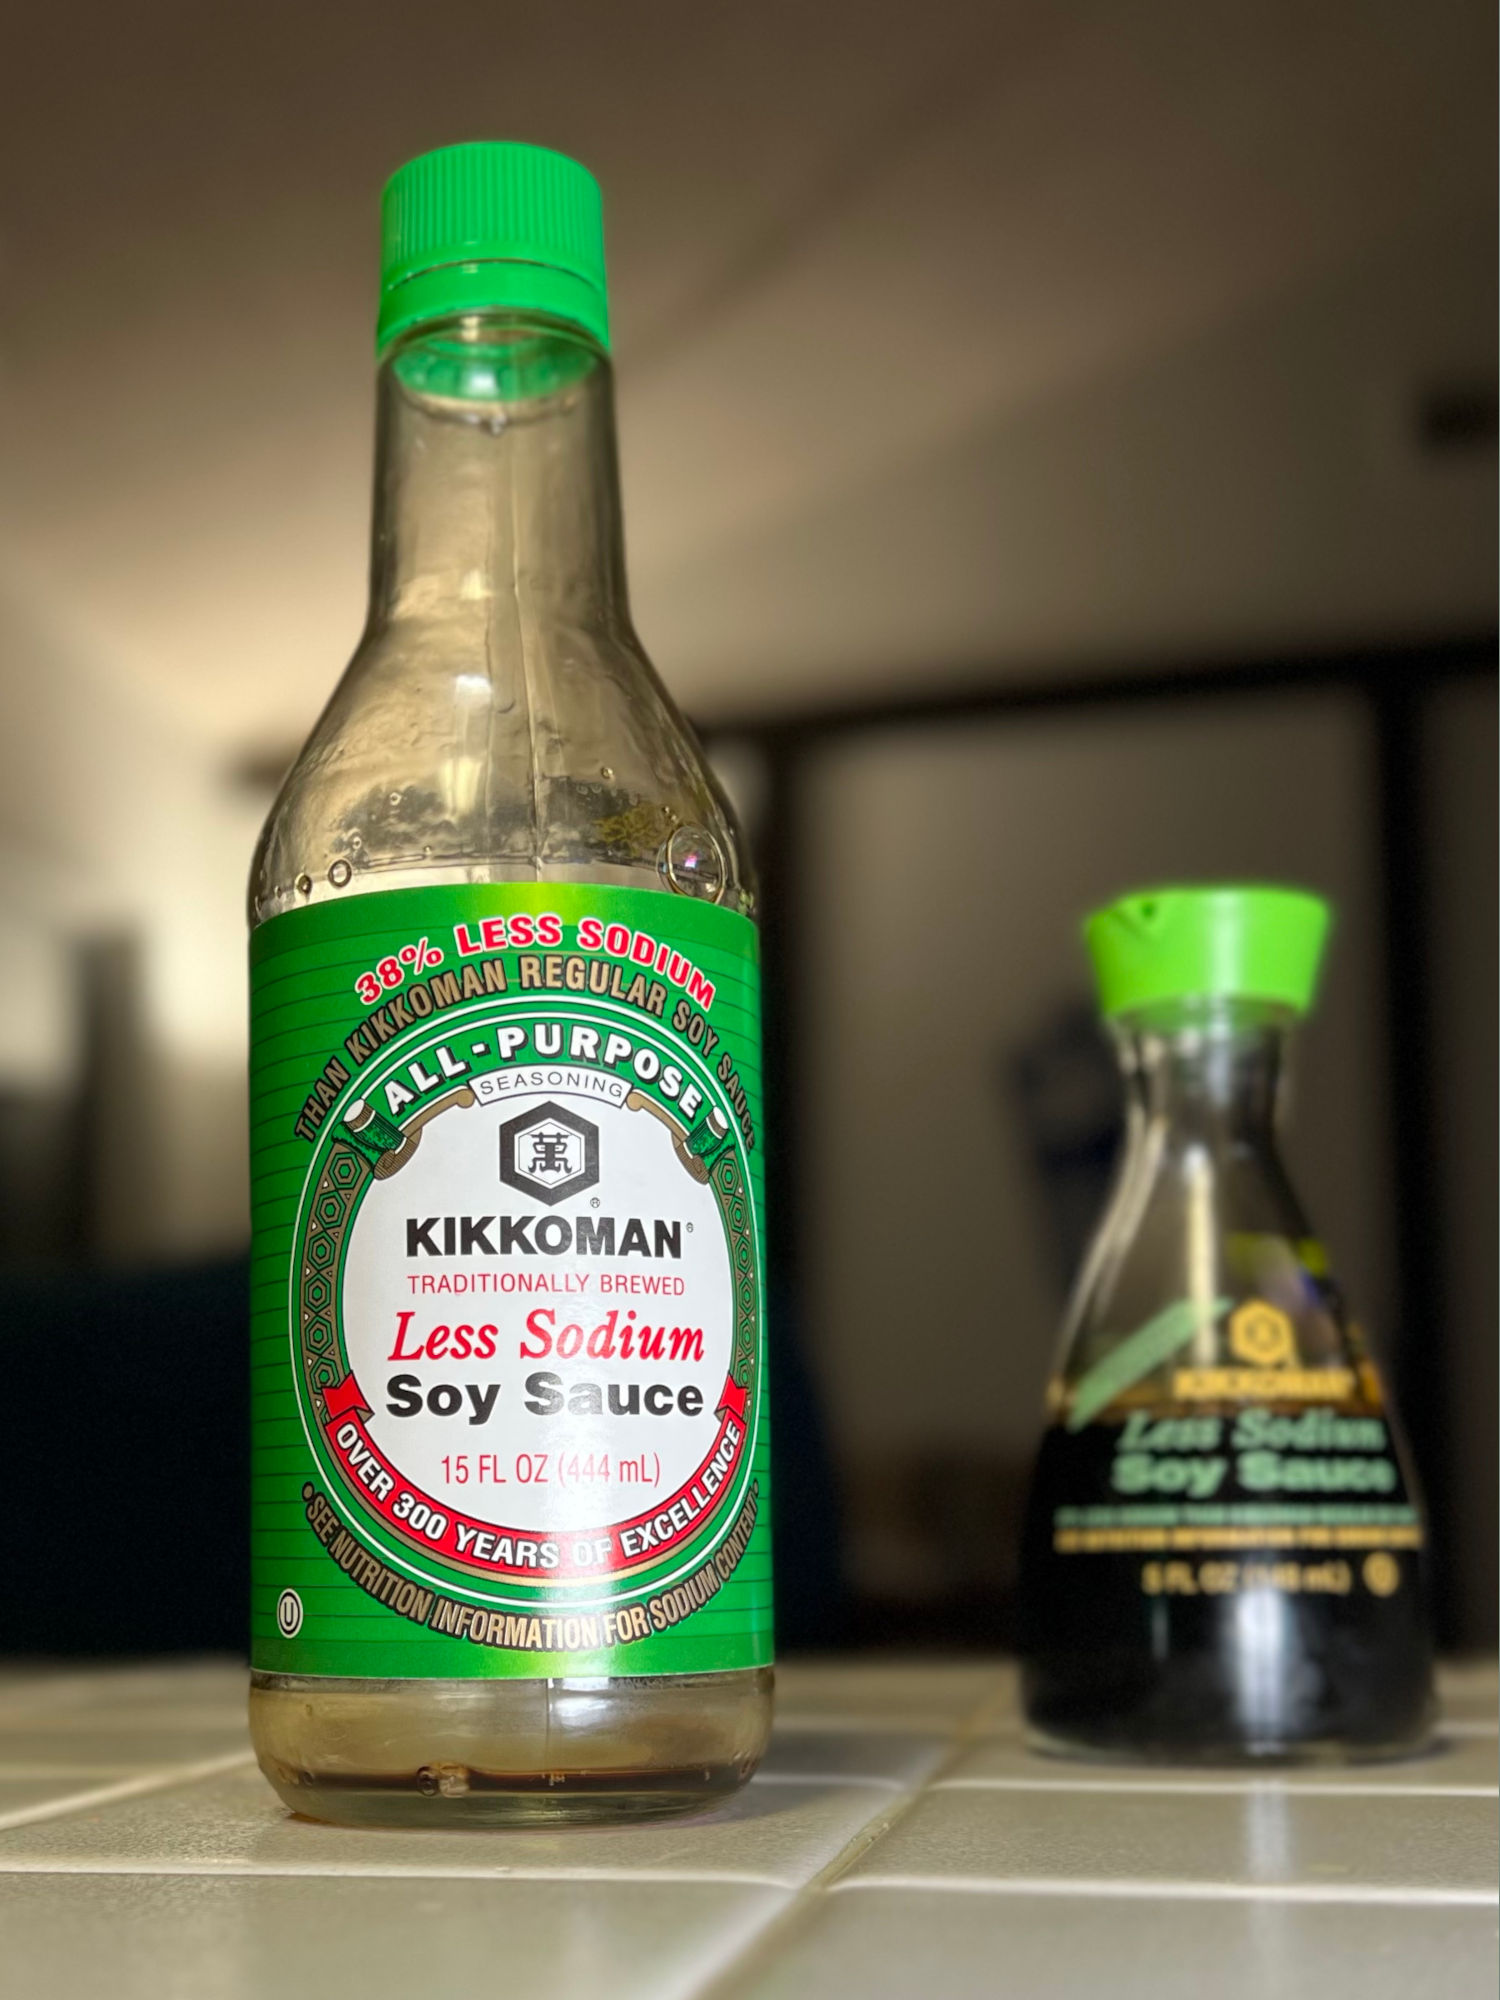 Kikkoman Less Sodium Soy Sauce Label